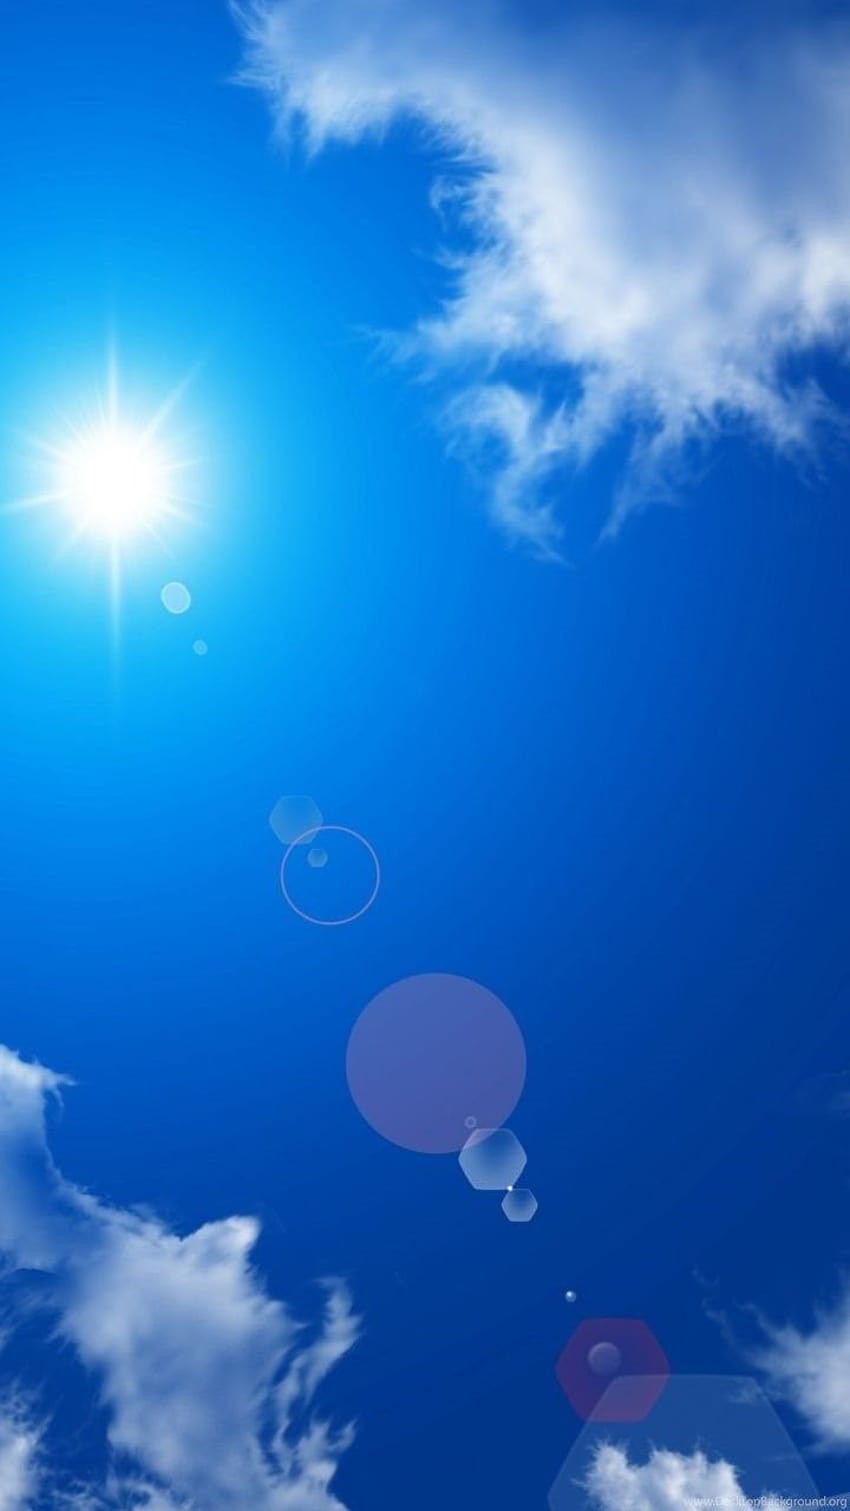 Android Summer season 720x1280 blue sky sun.jpg Backgrounds, blue sky summer HD phone wallpaper